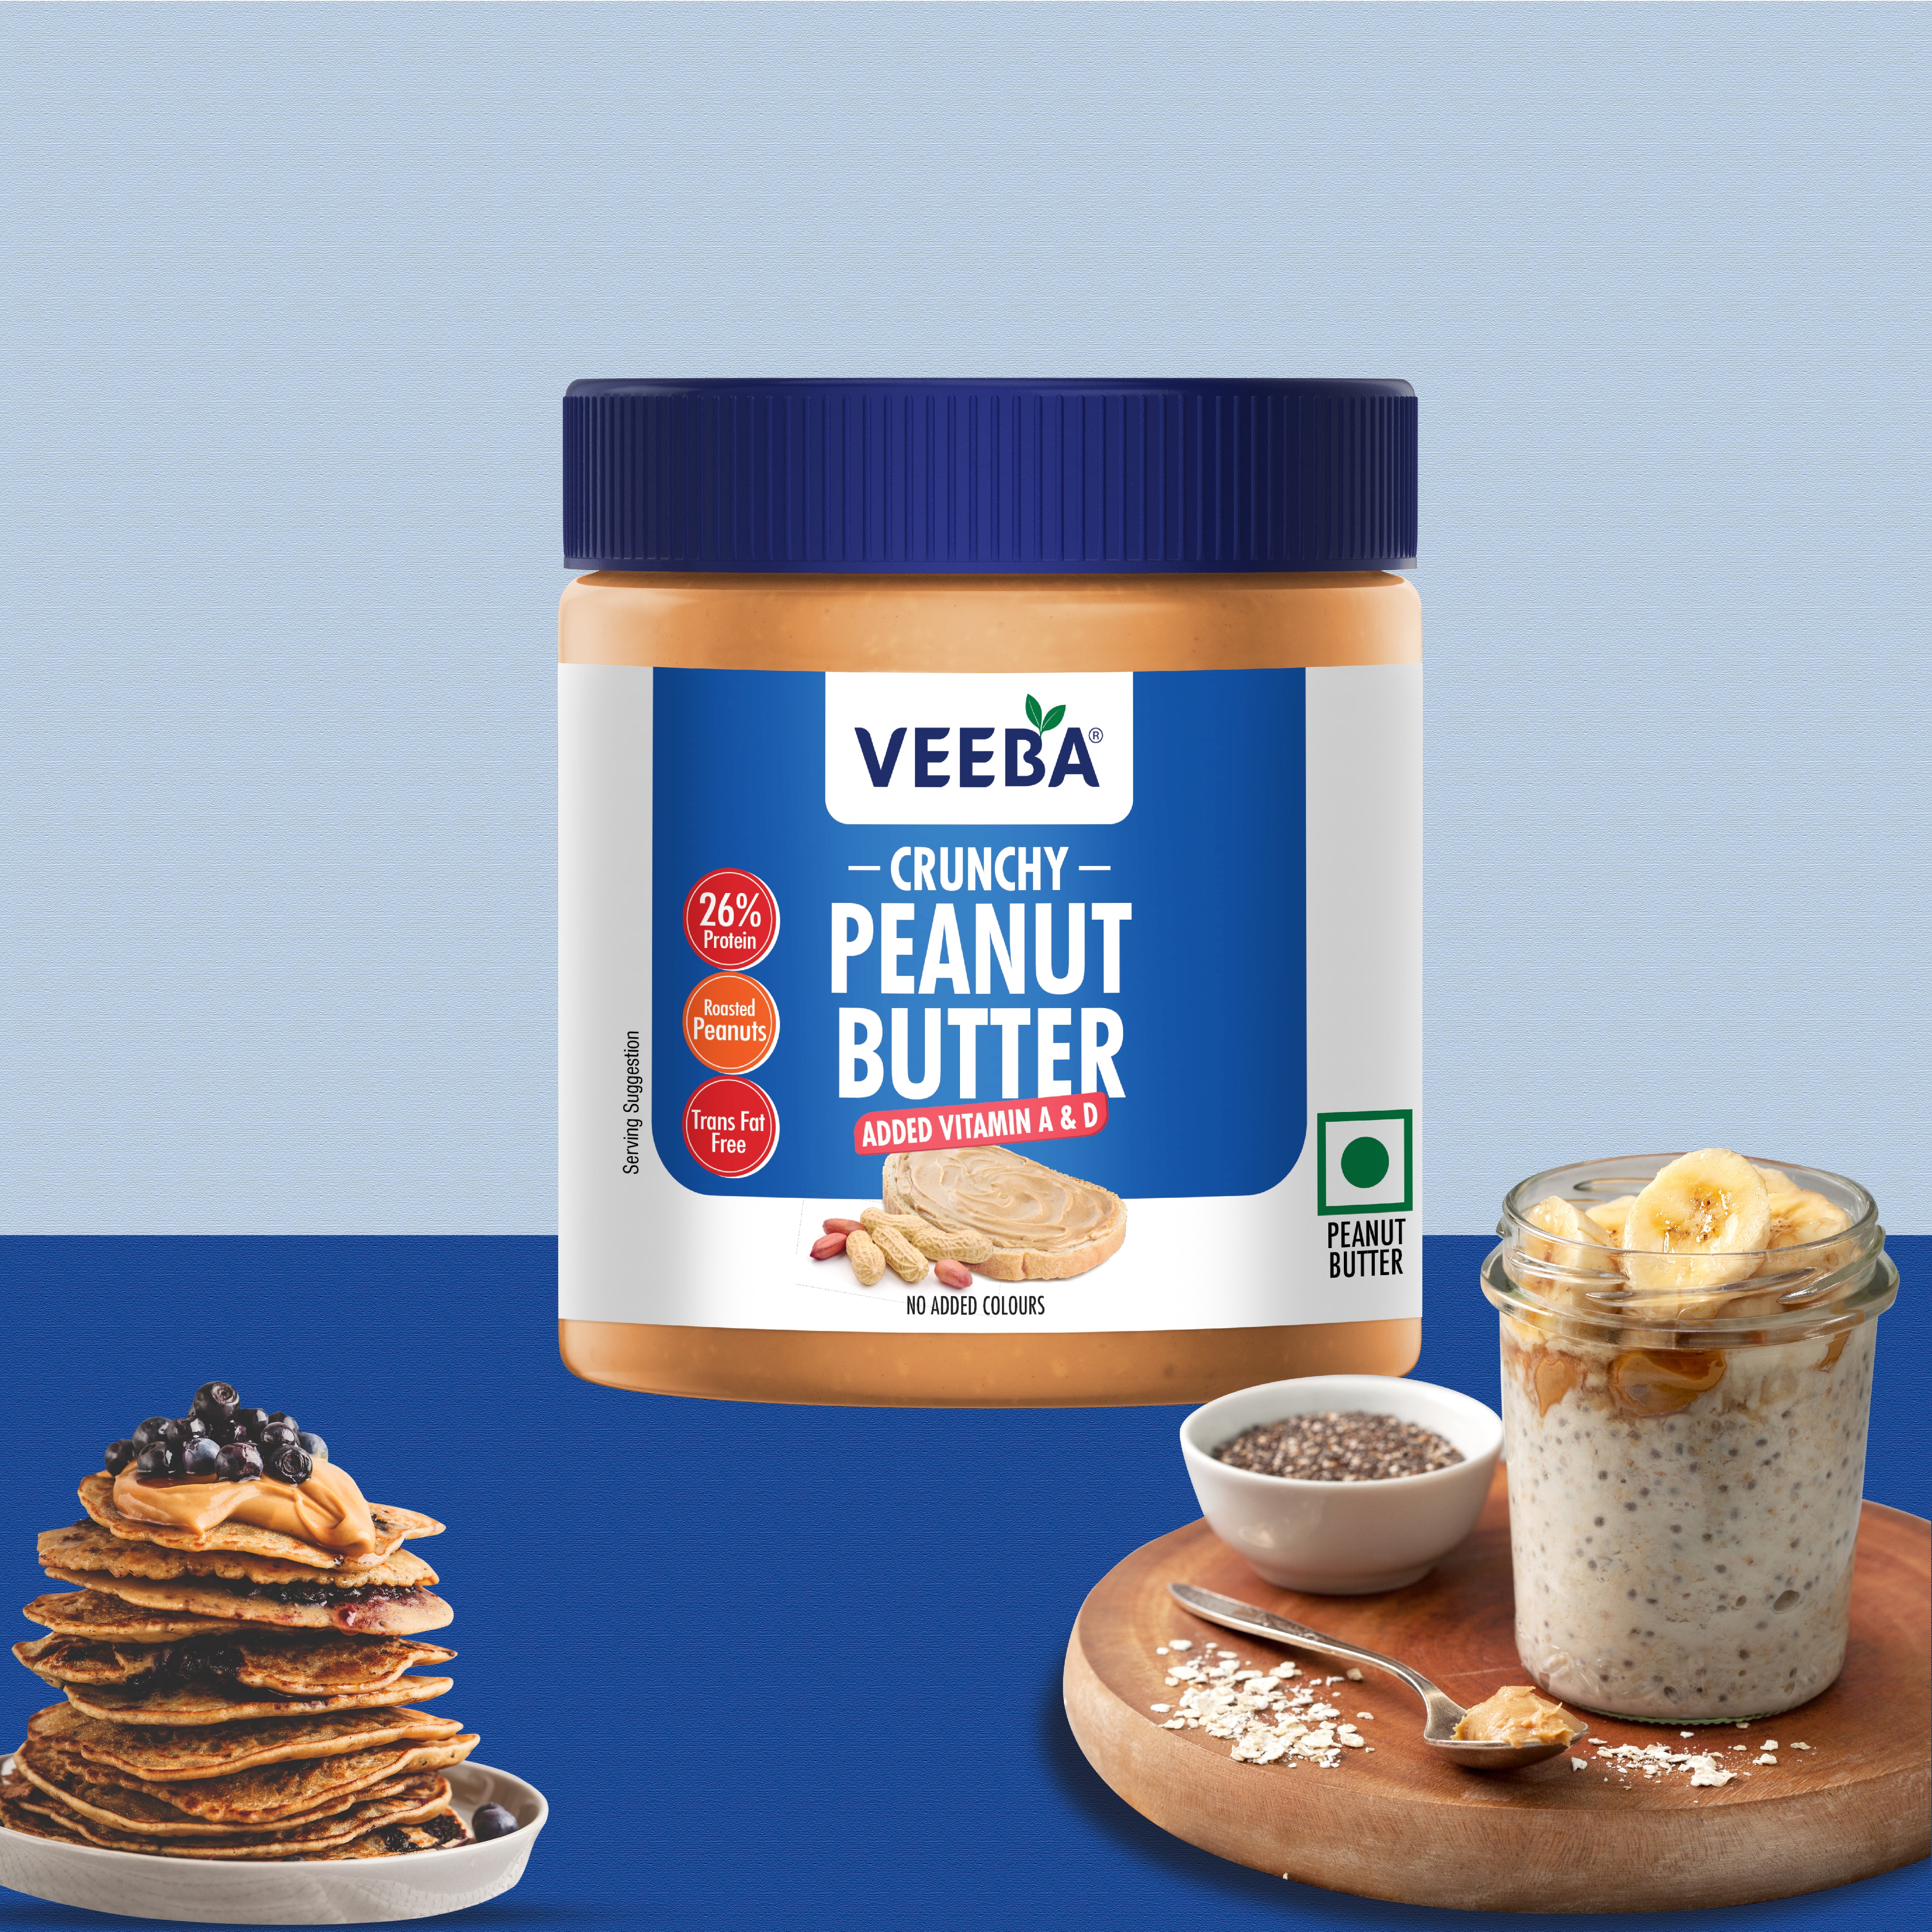 Crunchy Peanut Butter added Vitamin A & D (340 g)